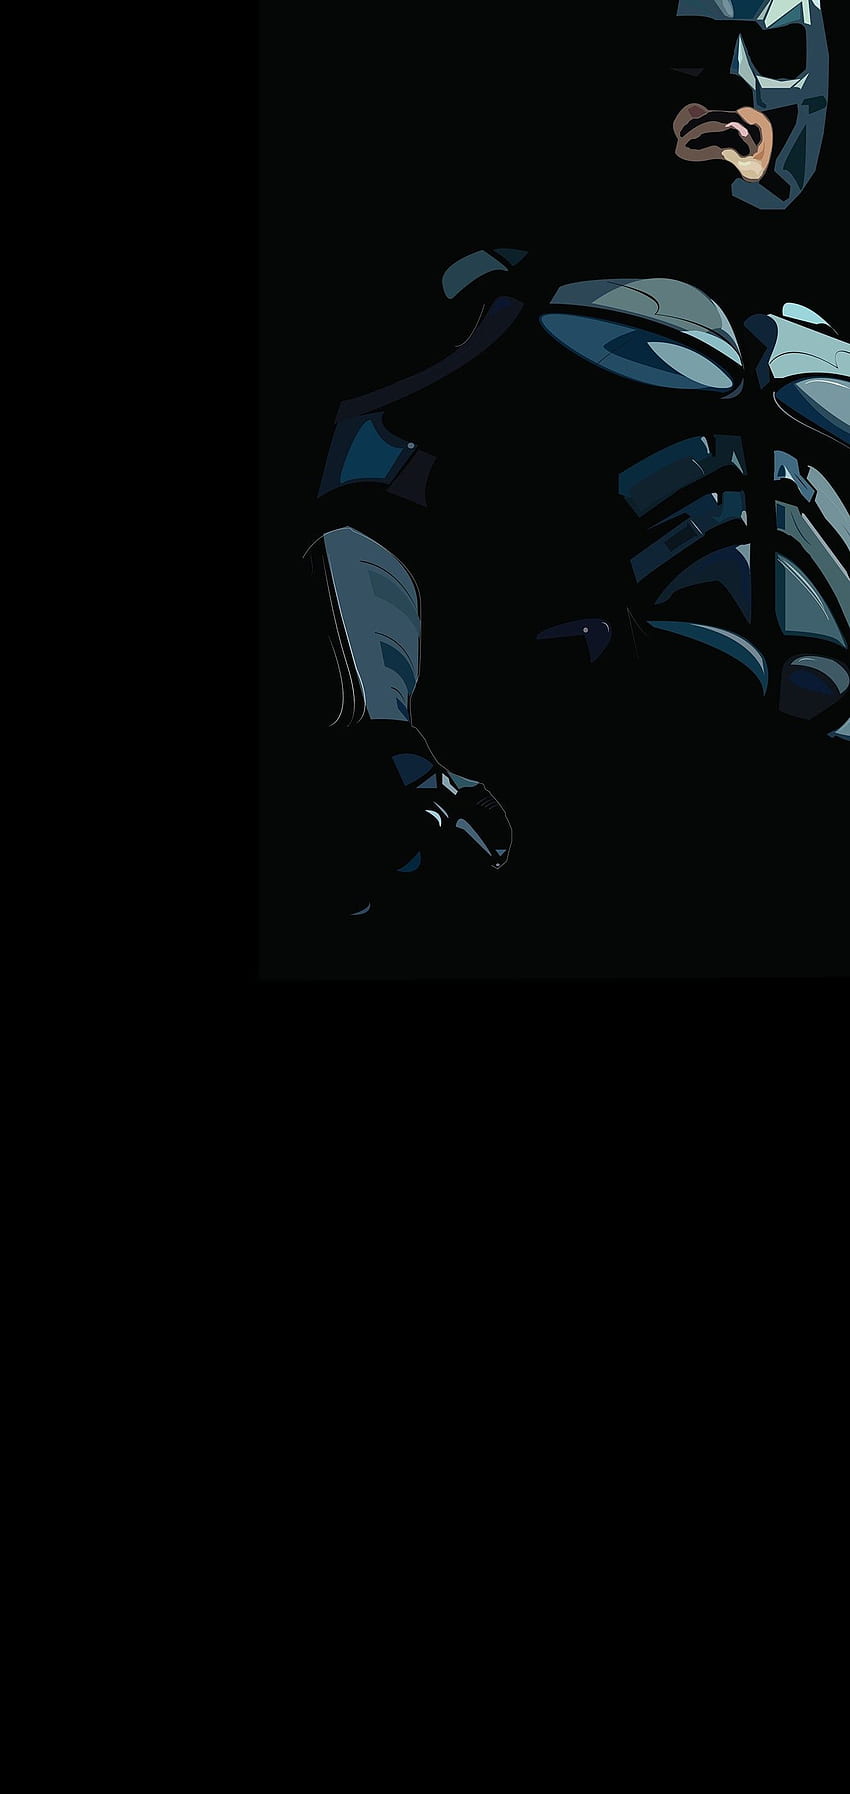 Batman galaxy HD wallpapers | Pxfuel